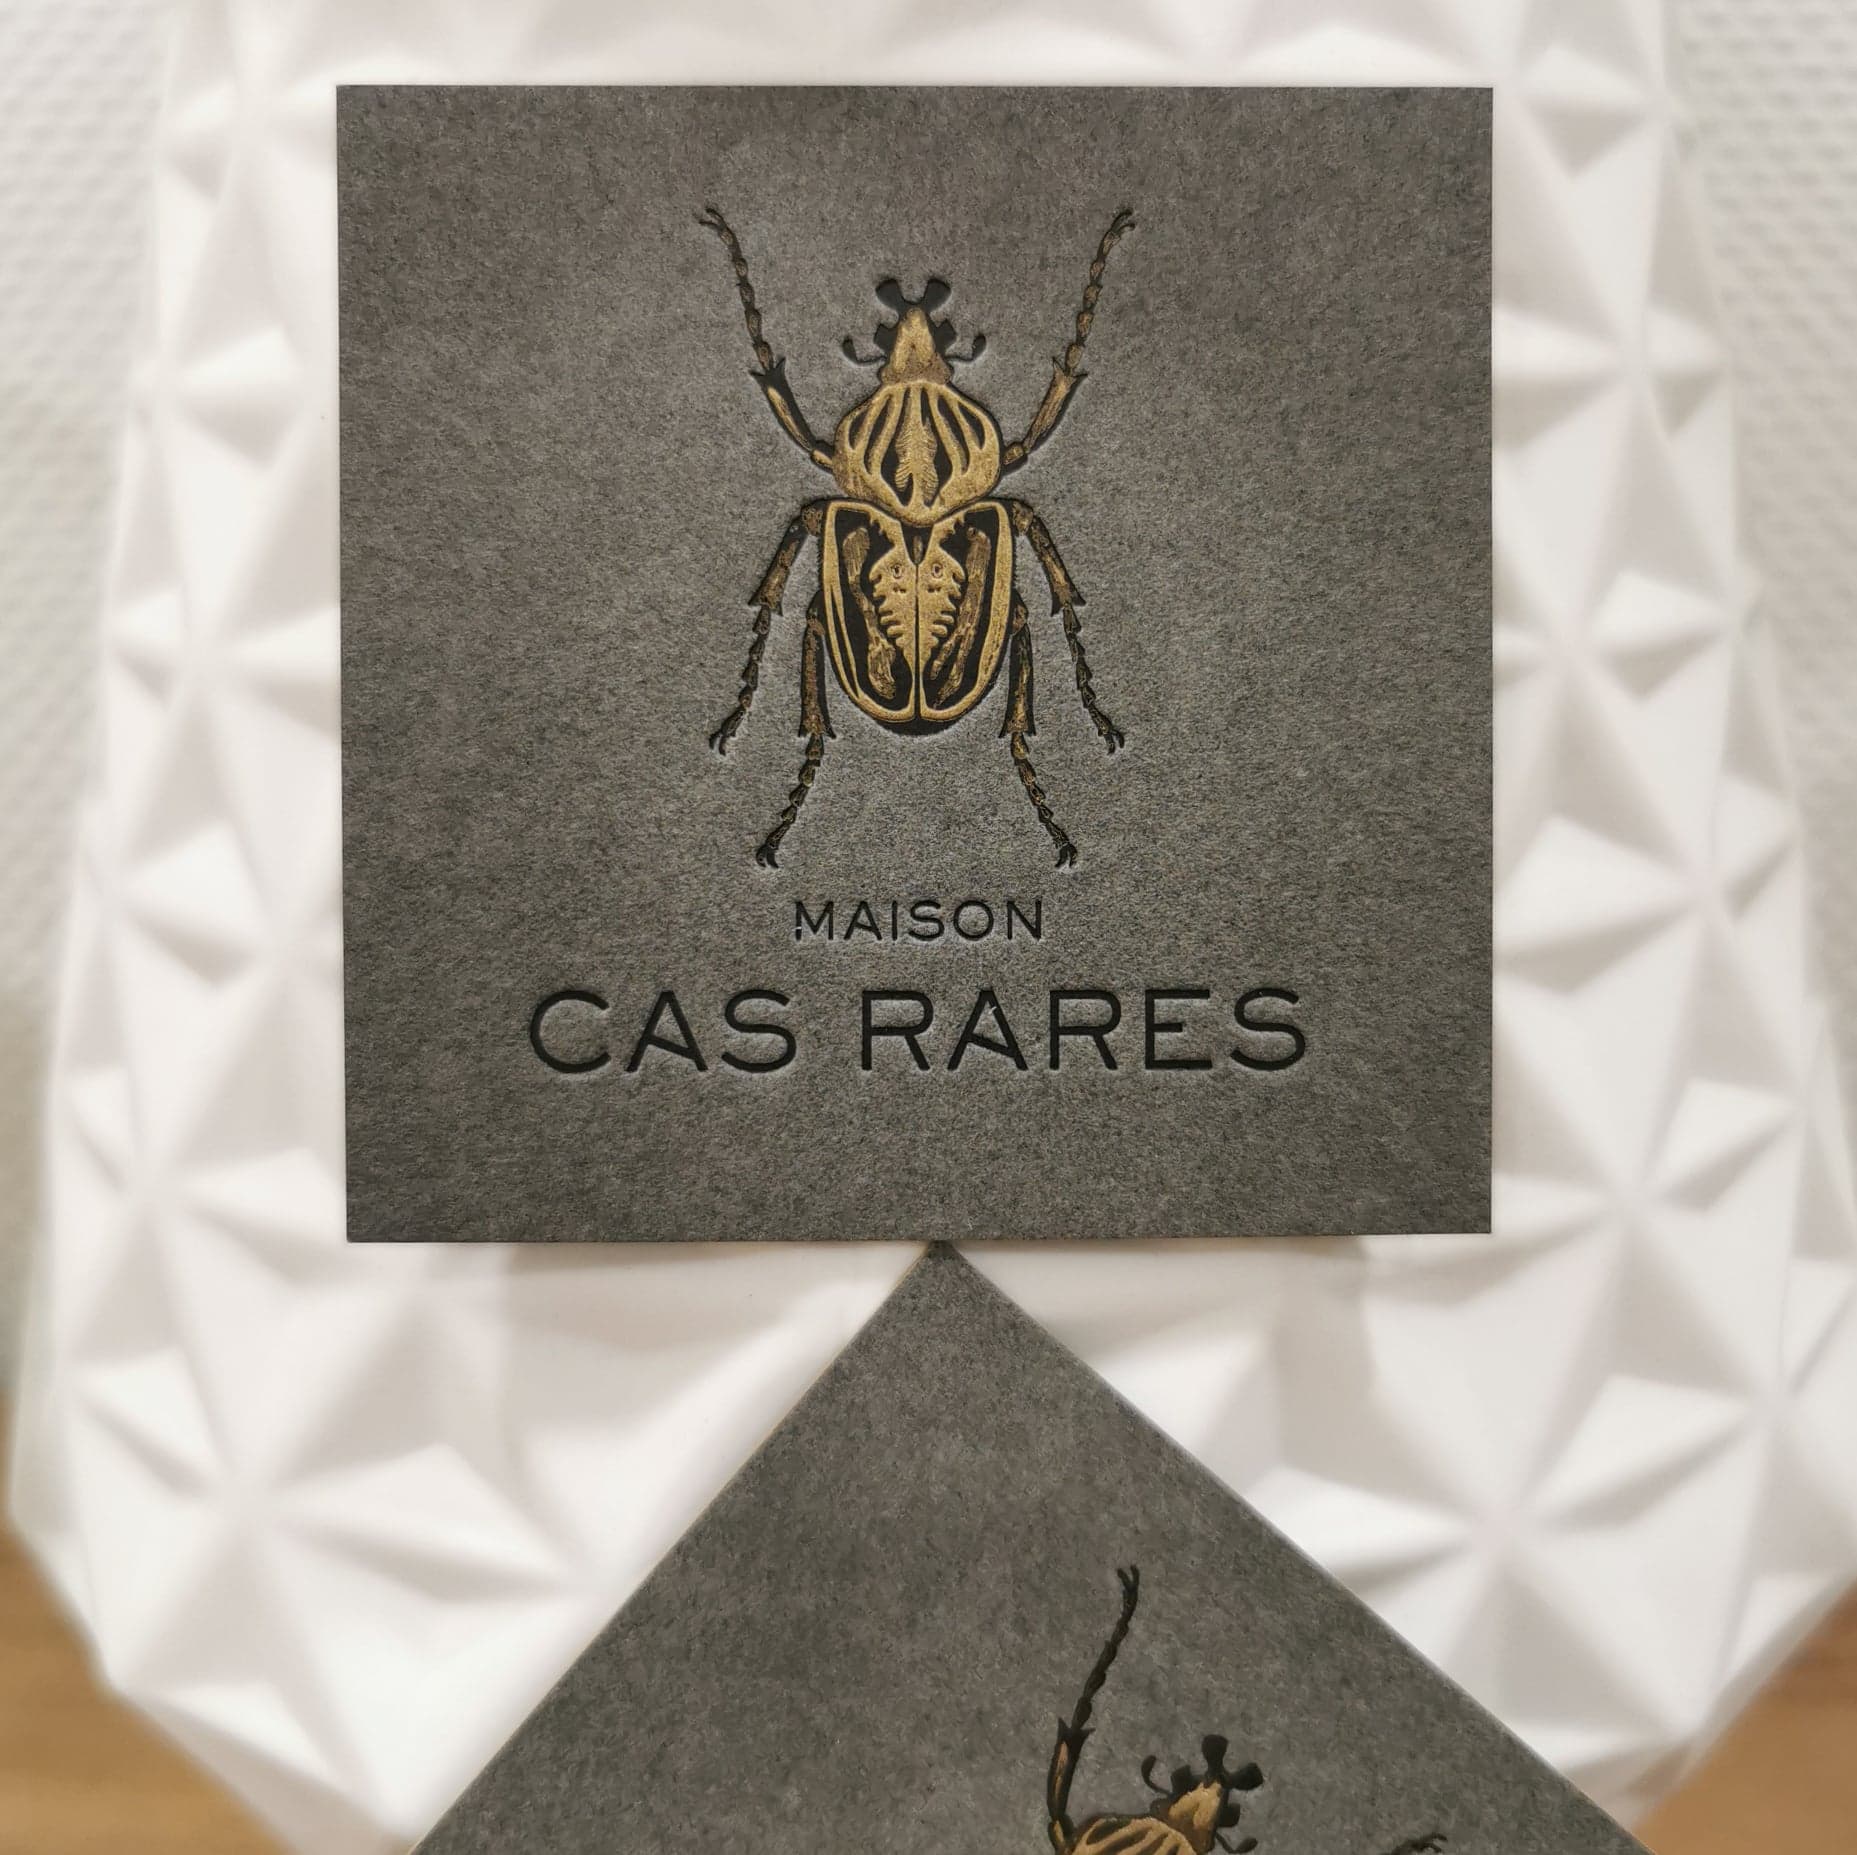 Maison Cas Rare Letterpress Business Card Design by Oeil pour Oeil